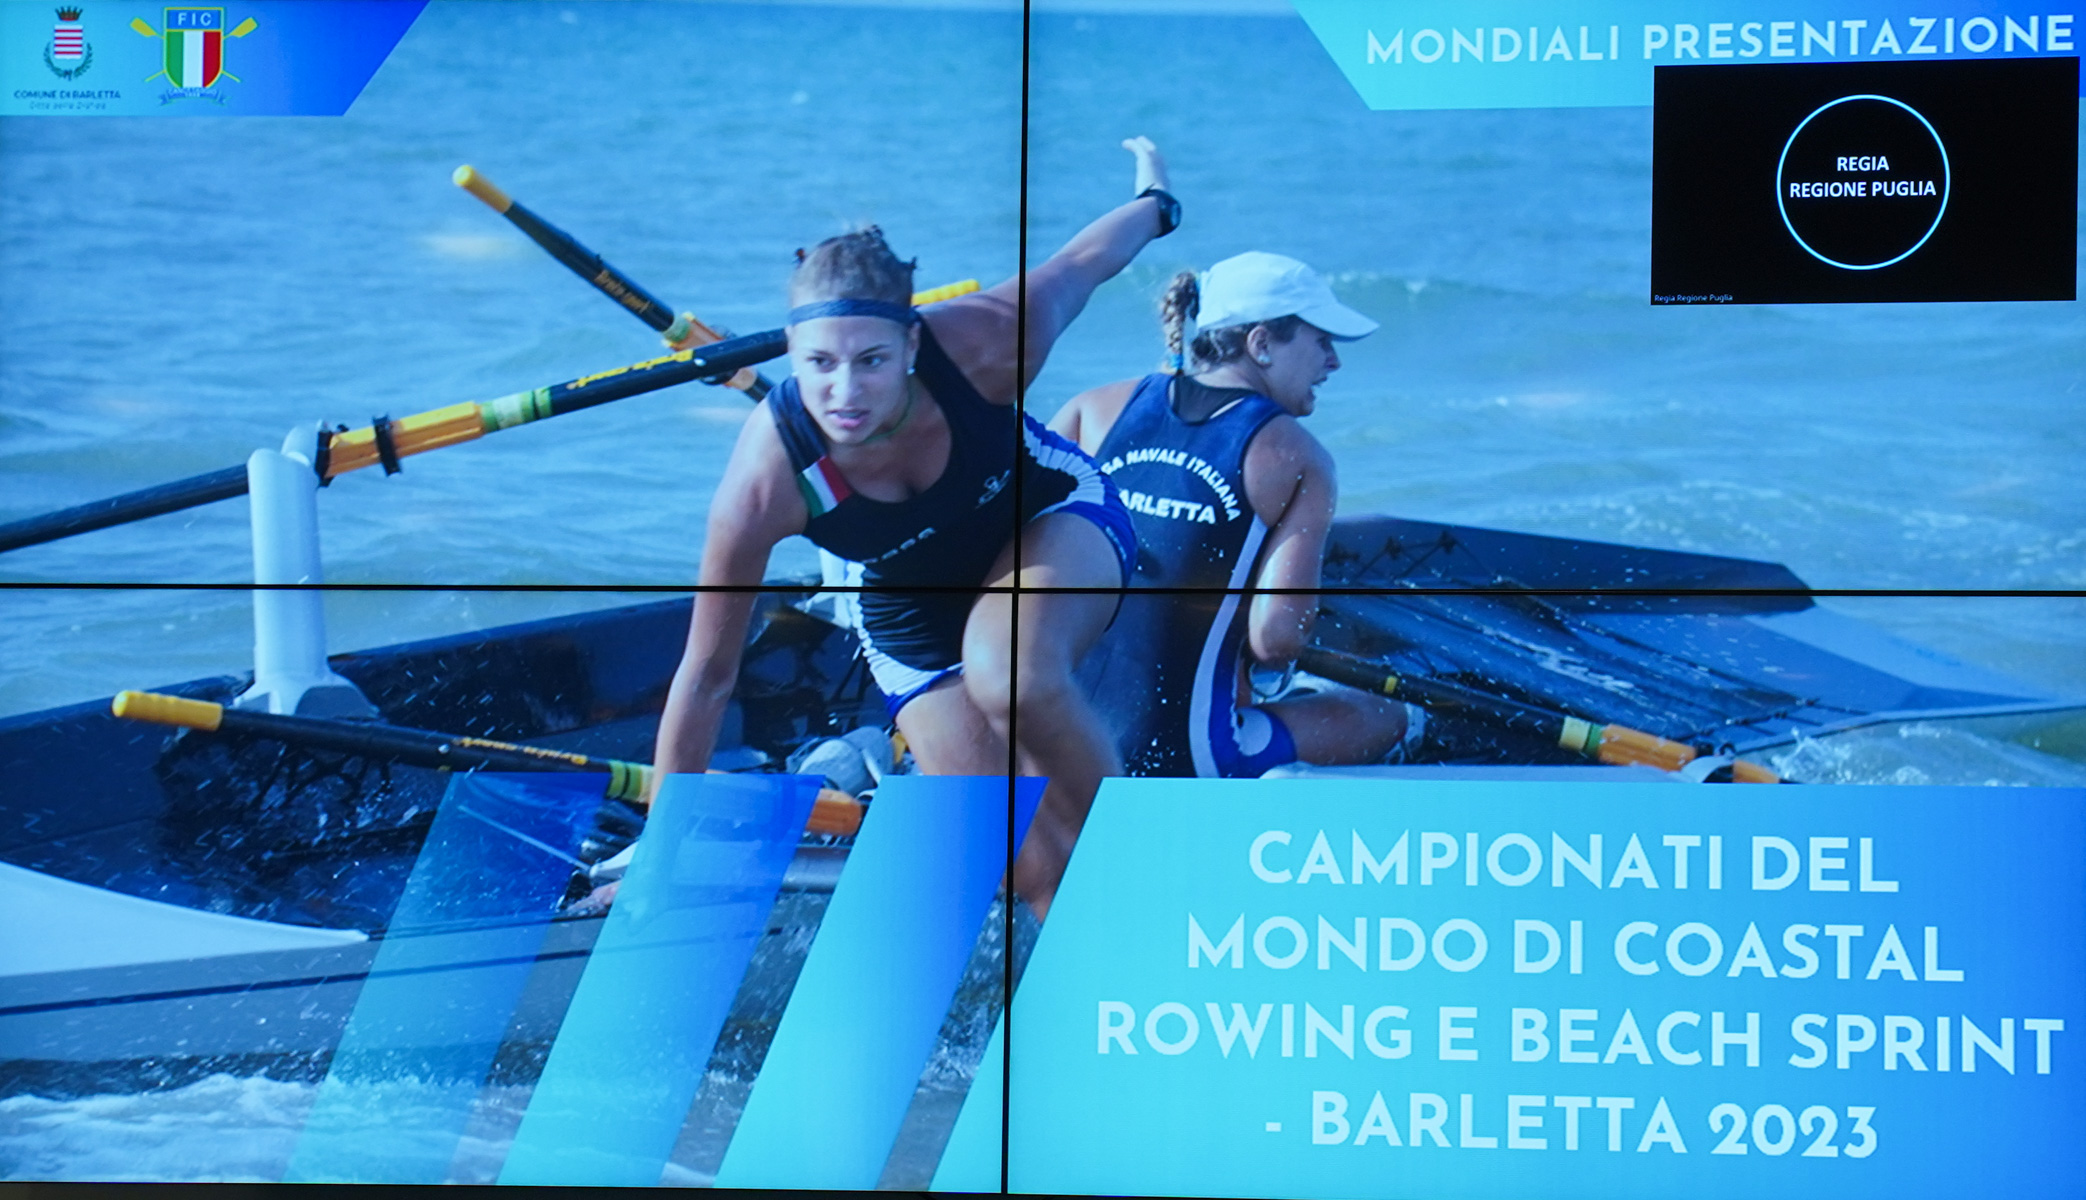 Galleria Mondiali di Coastal Rowing e Beach Sprint 2023 a Barletta,  svelato il logo della manifestazione - Diapositiva 13 di 13